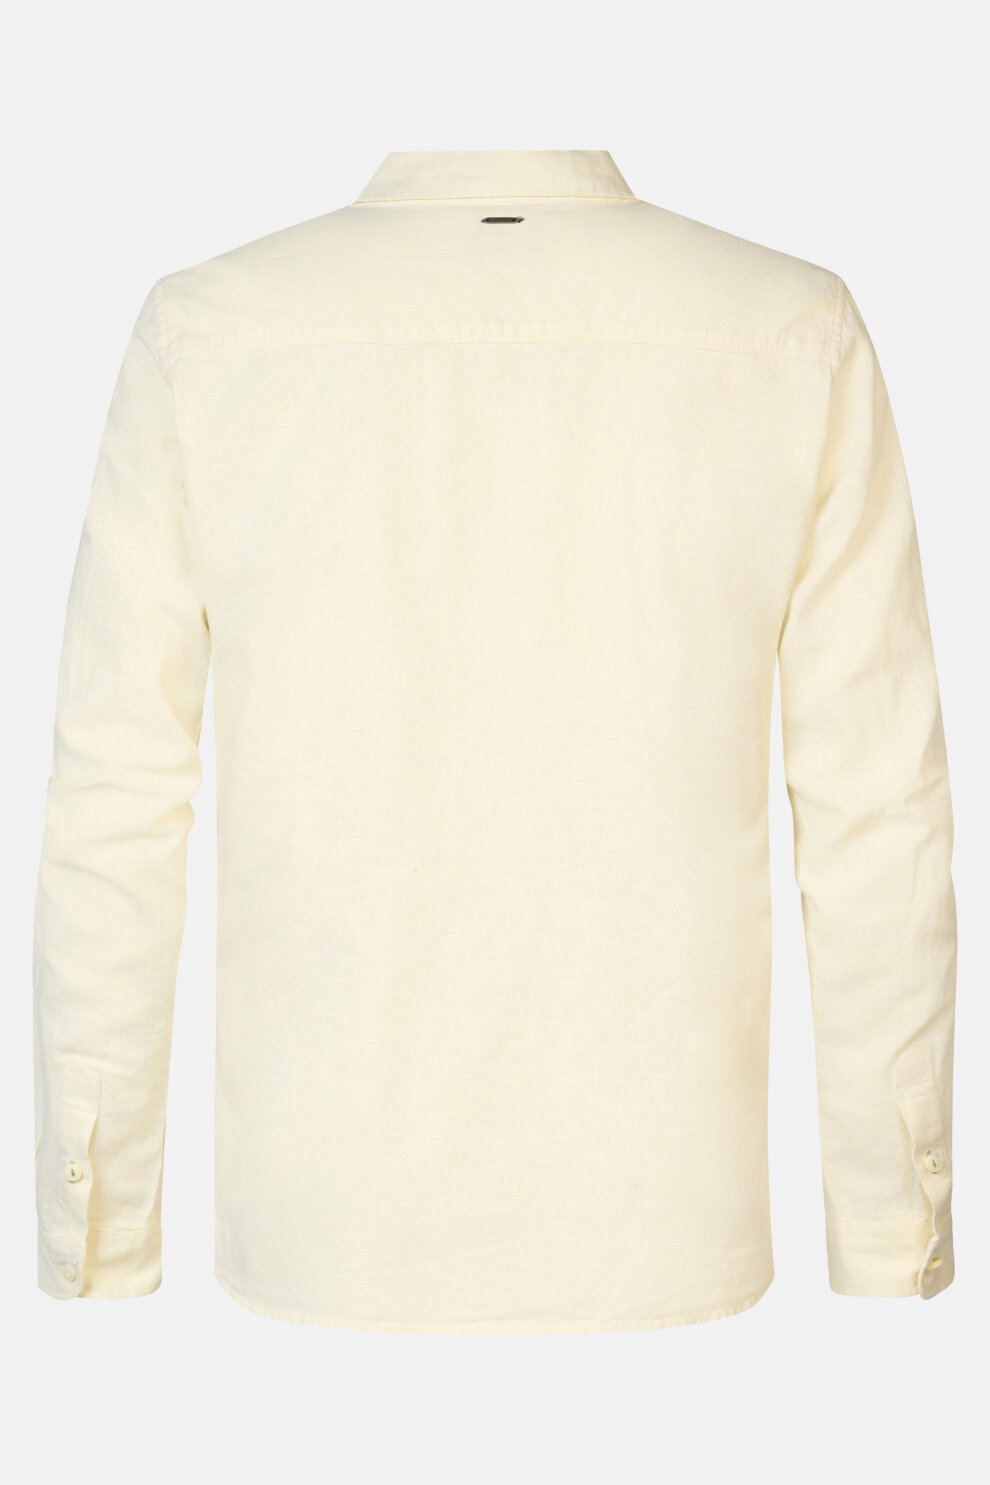 MUŠKARCI - Košulje - Petrol košulja - Dugi rukavi - Žuta